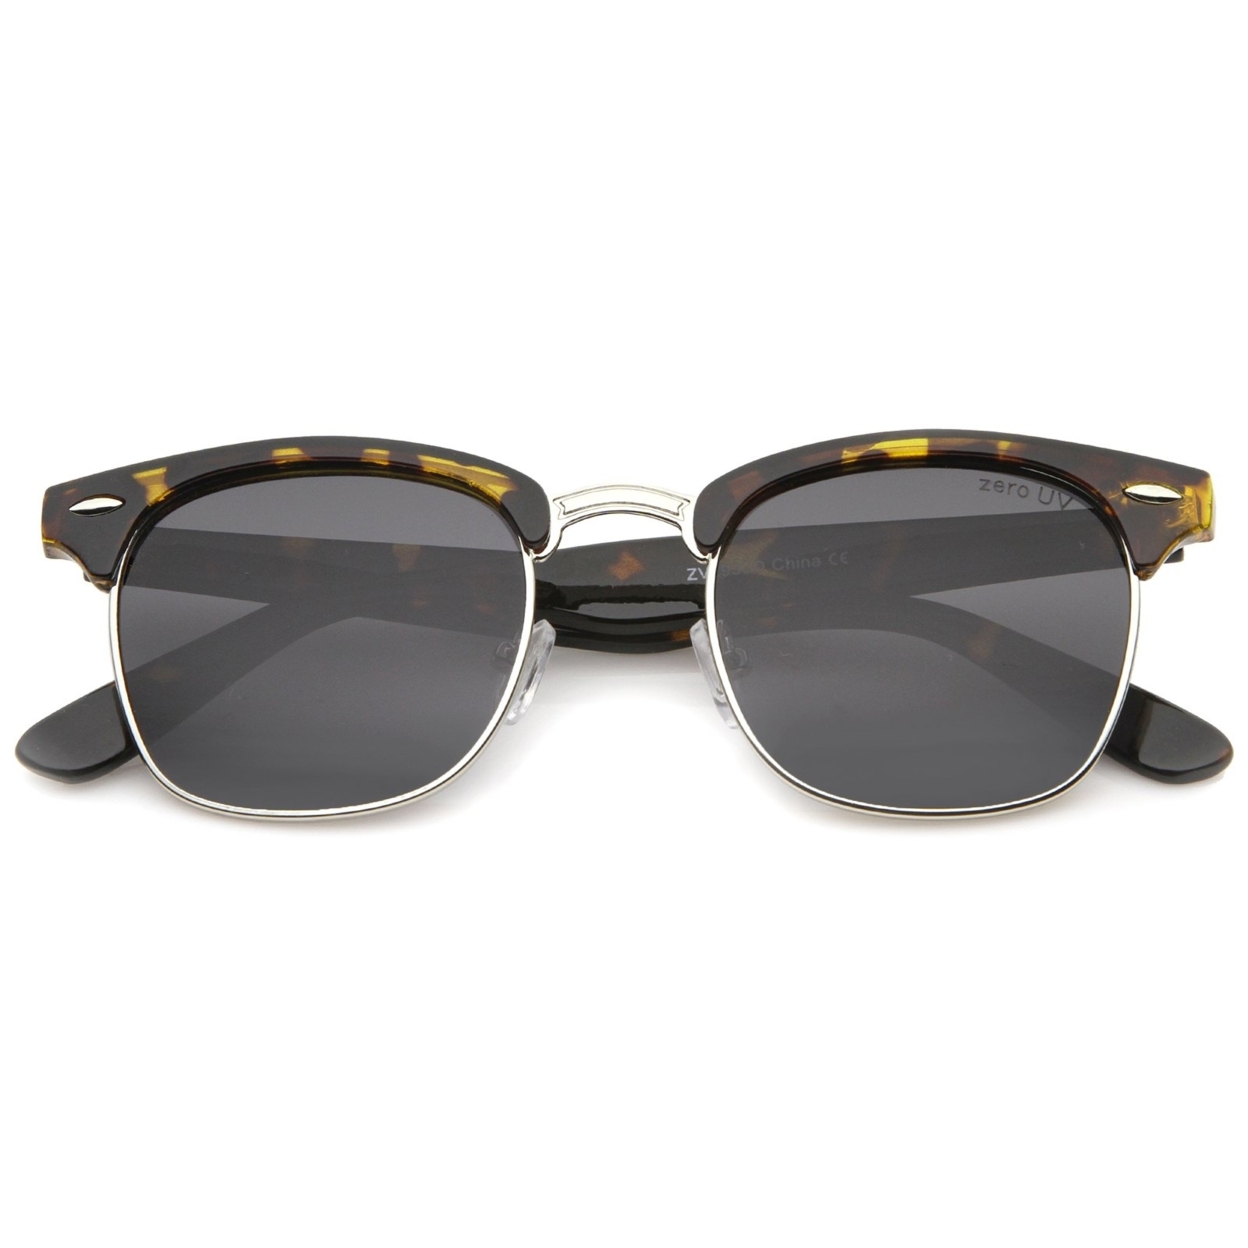 Polarized Lens Classic Half Frame Horn Rimmed Sunglasses 50mm - 2-Pack , TT-Slvr/Smk & Blk-Gld/Smk Polarized